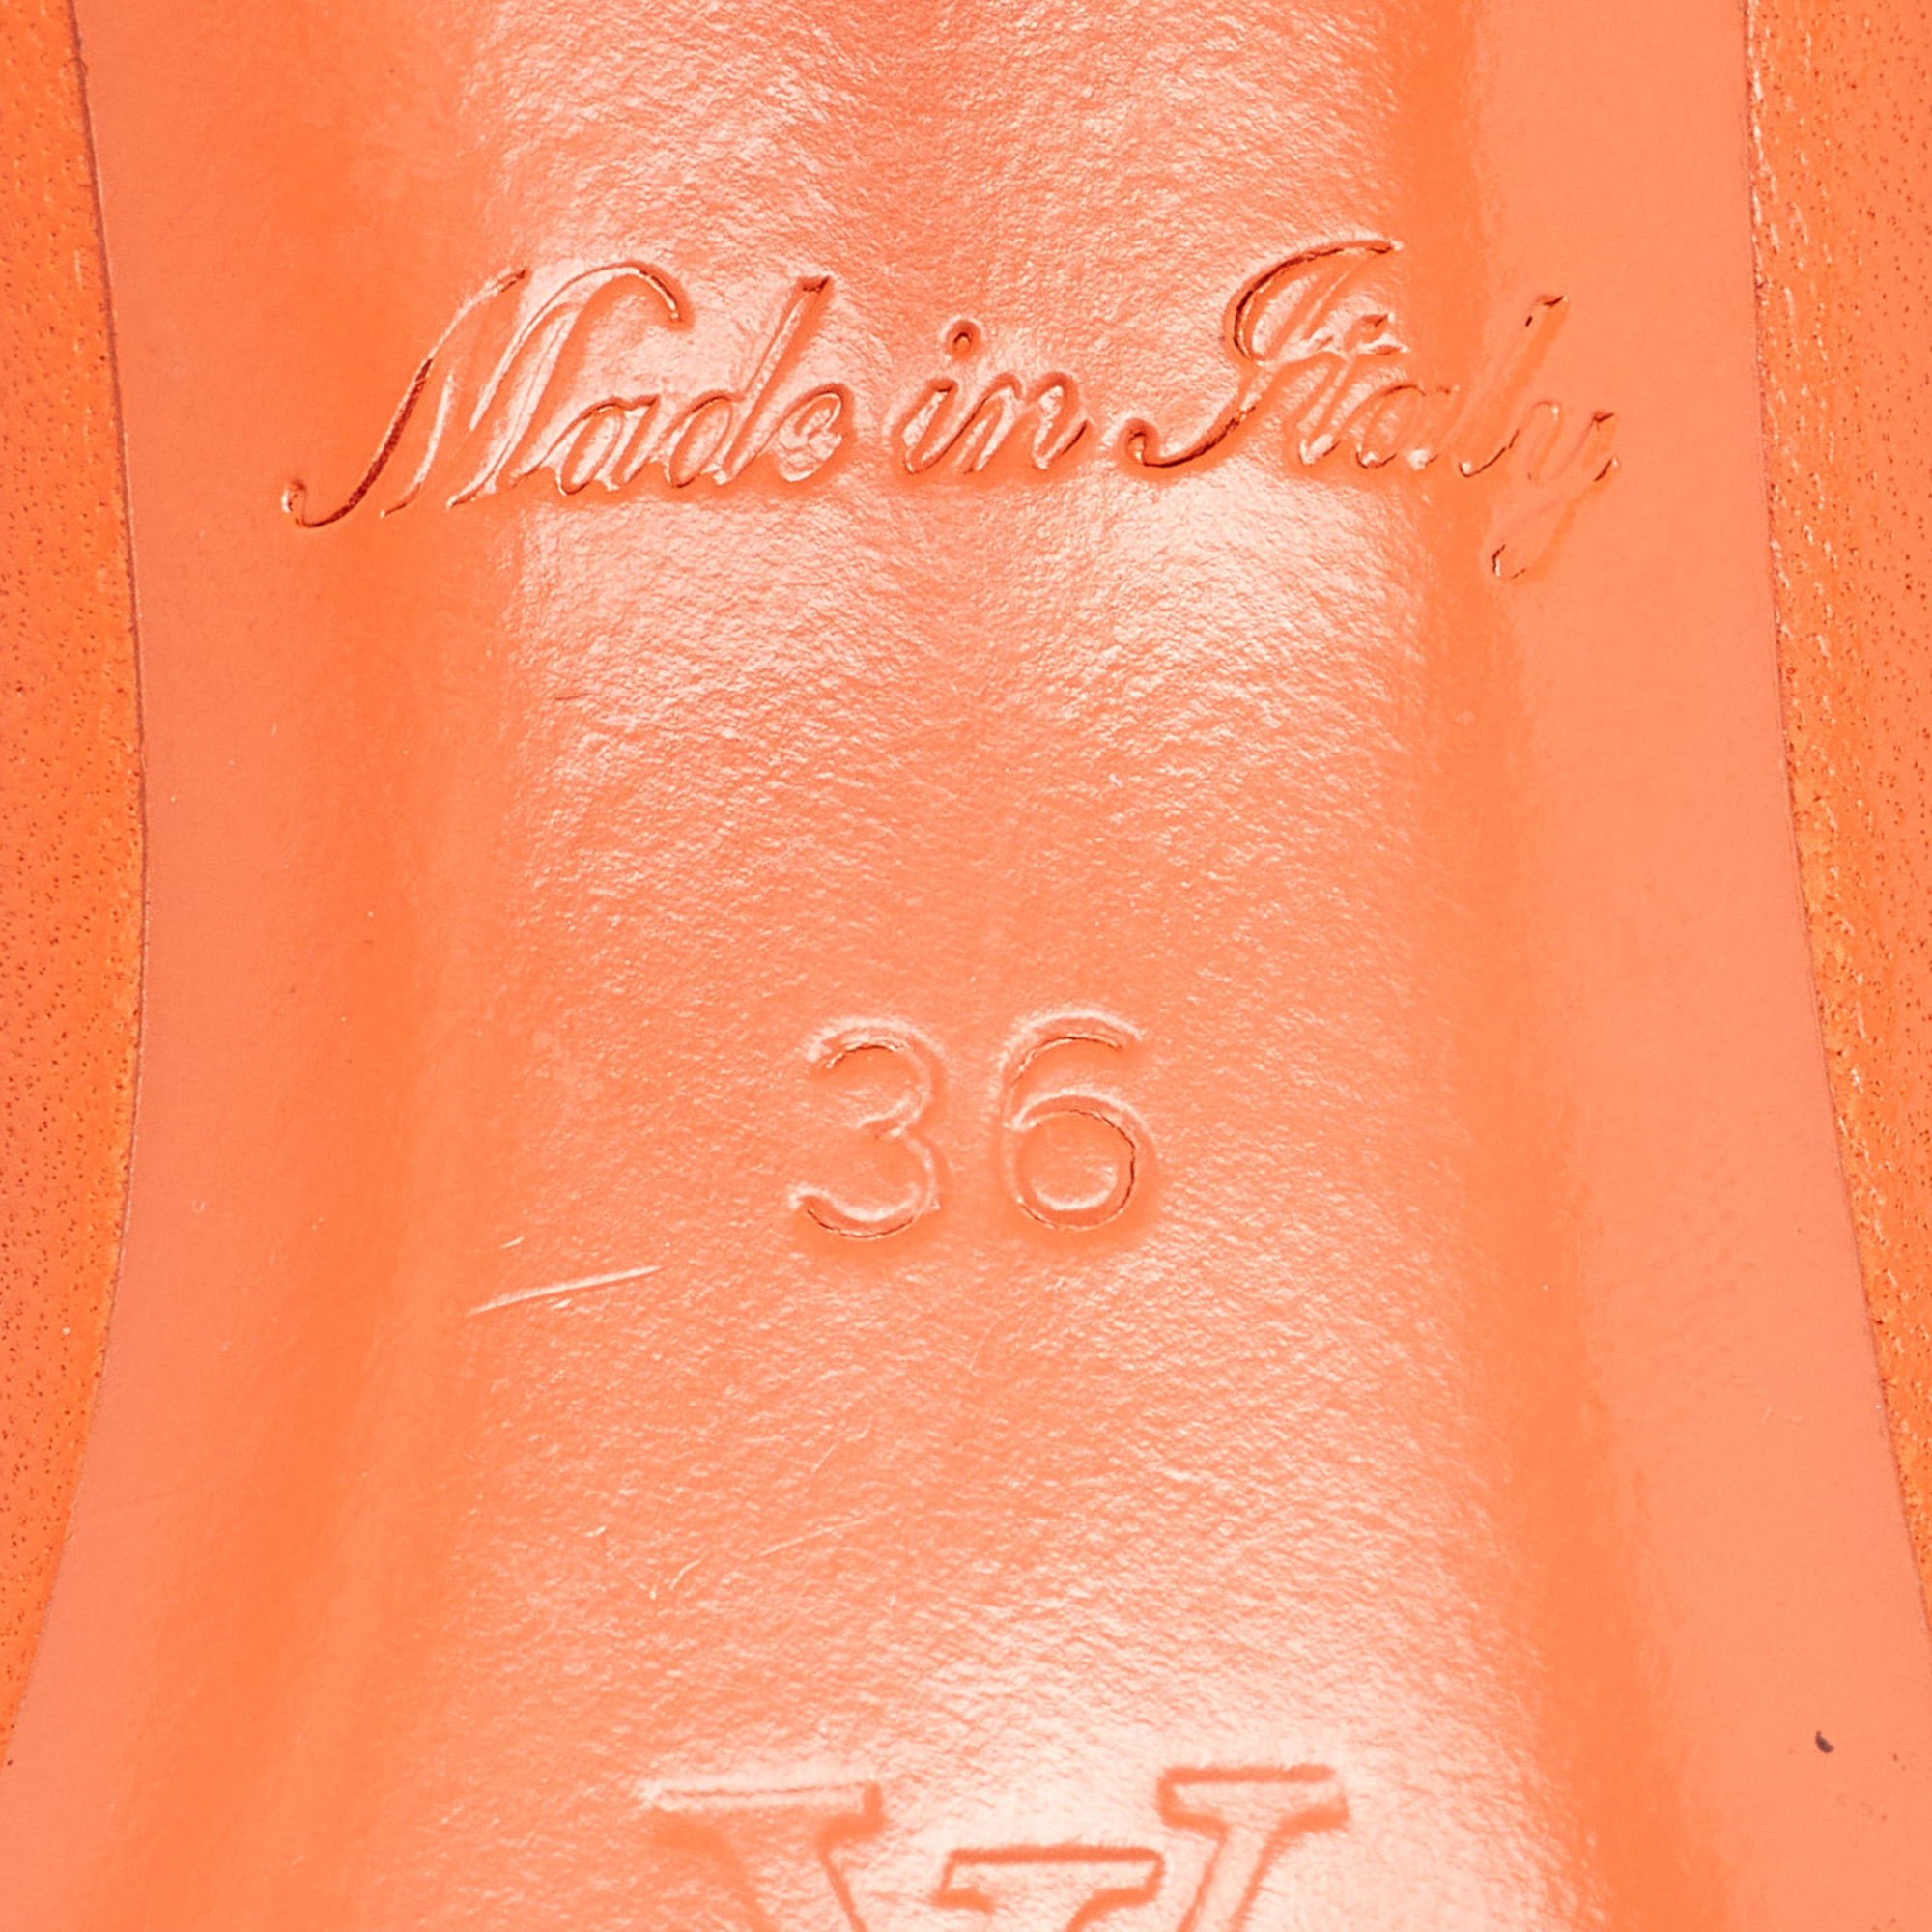 Louis Vuitton Orange Monogram Leather Revival Open Toe Slide Sandals Size 36